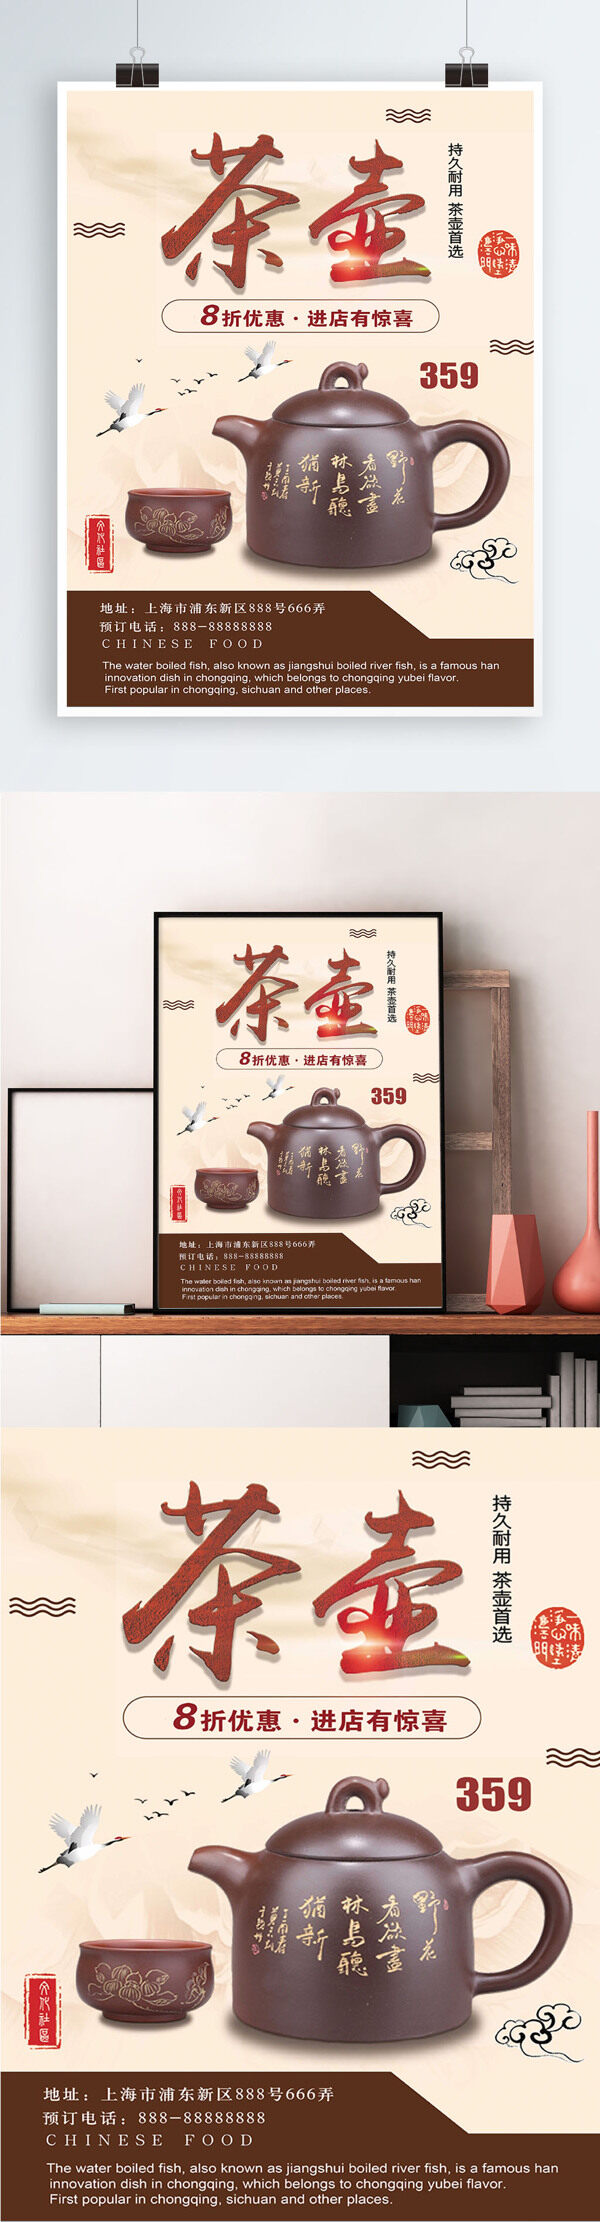 黄色背景简约中国风茶壶宣传海报